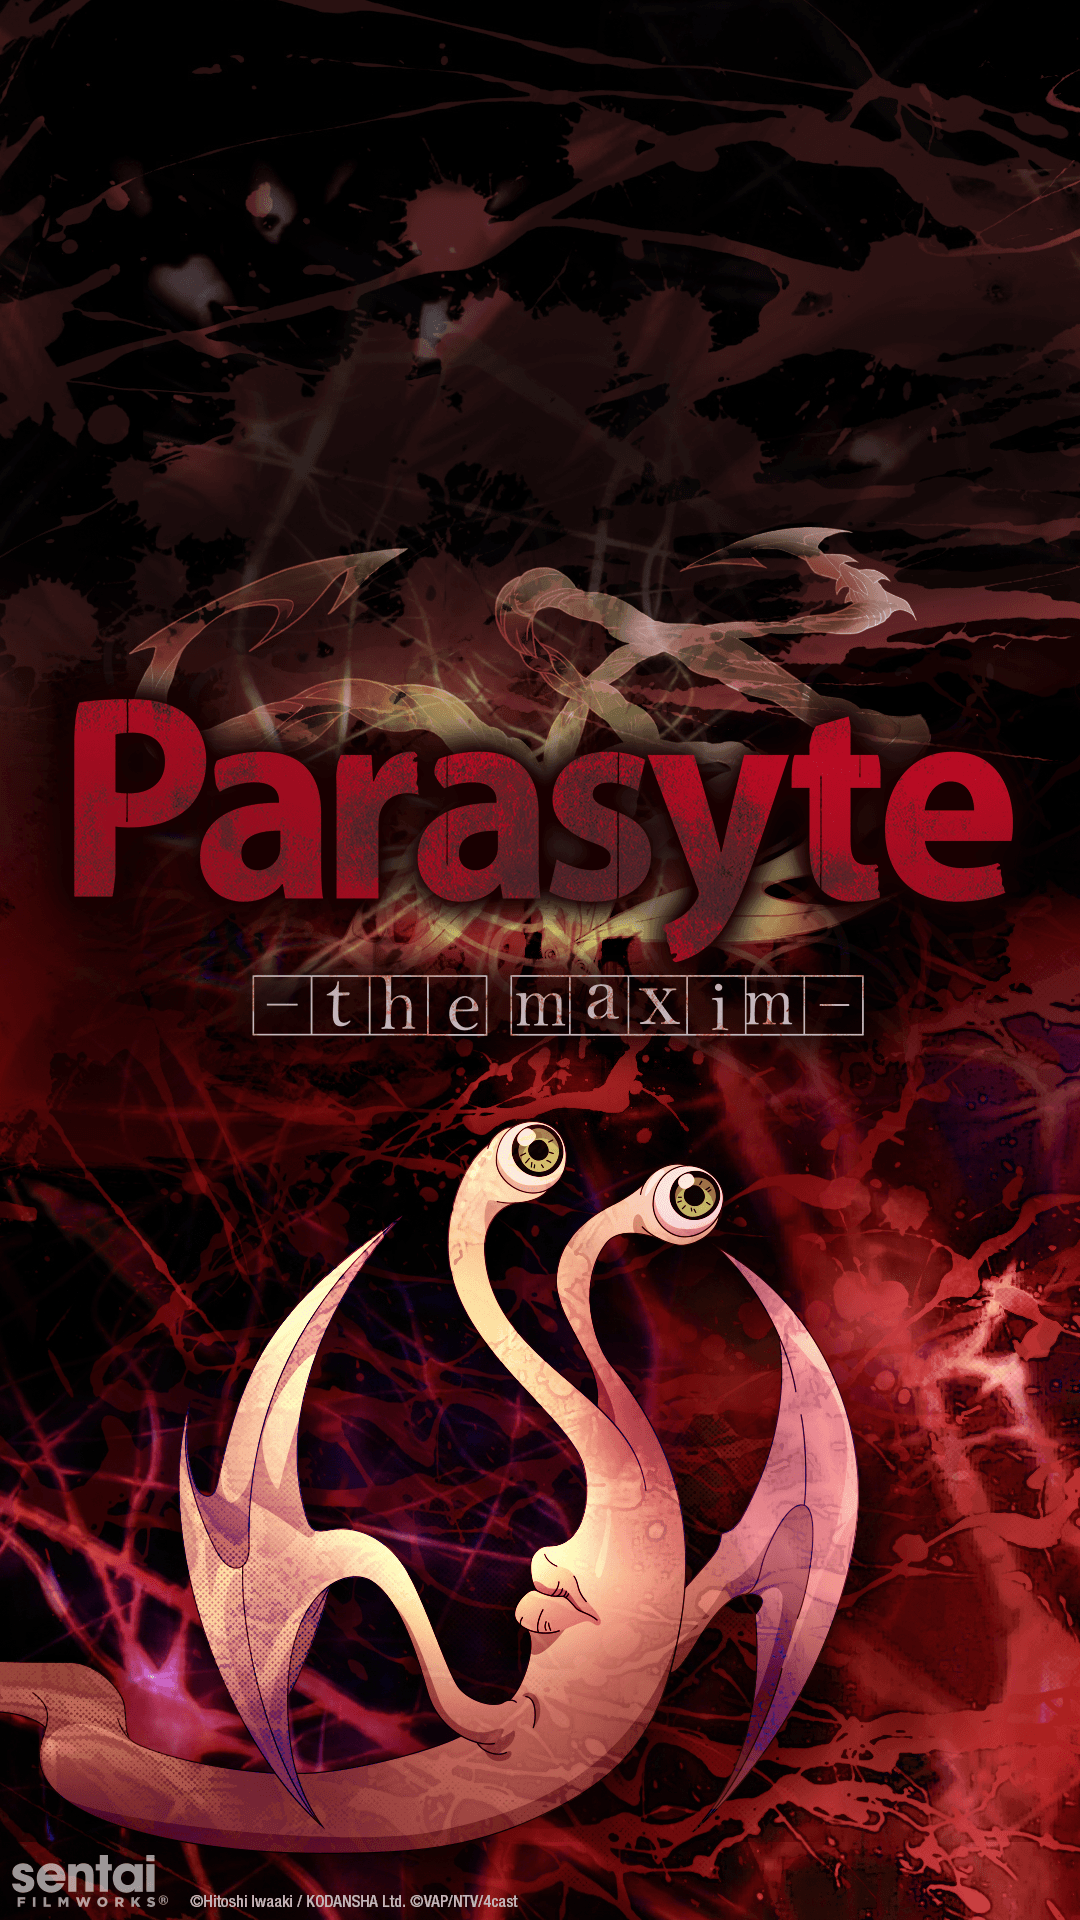 Parasyte -the maxim- Official Migi mobile wallpaper from Sentai